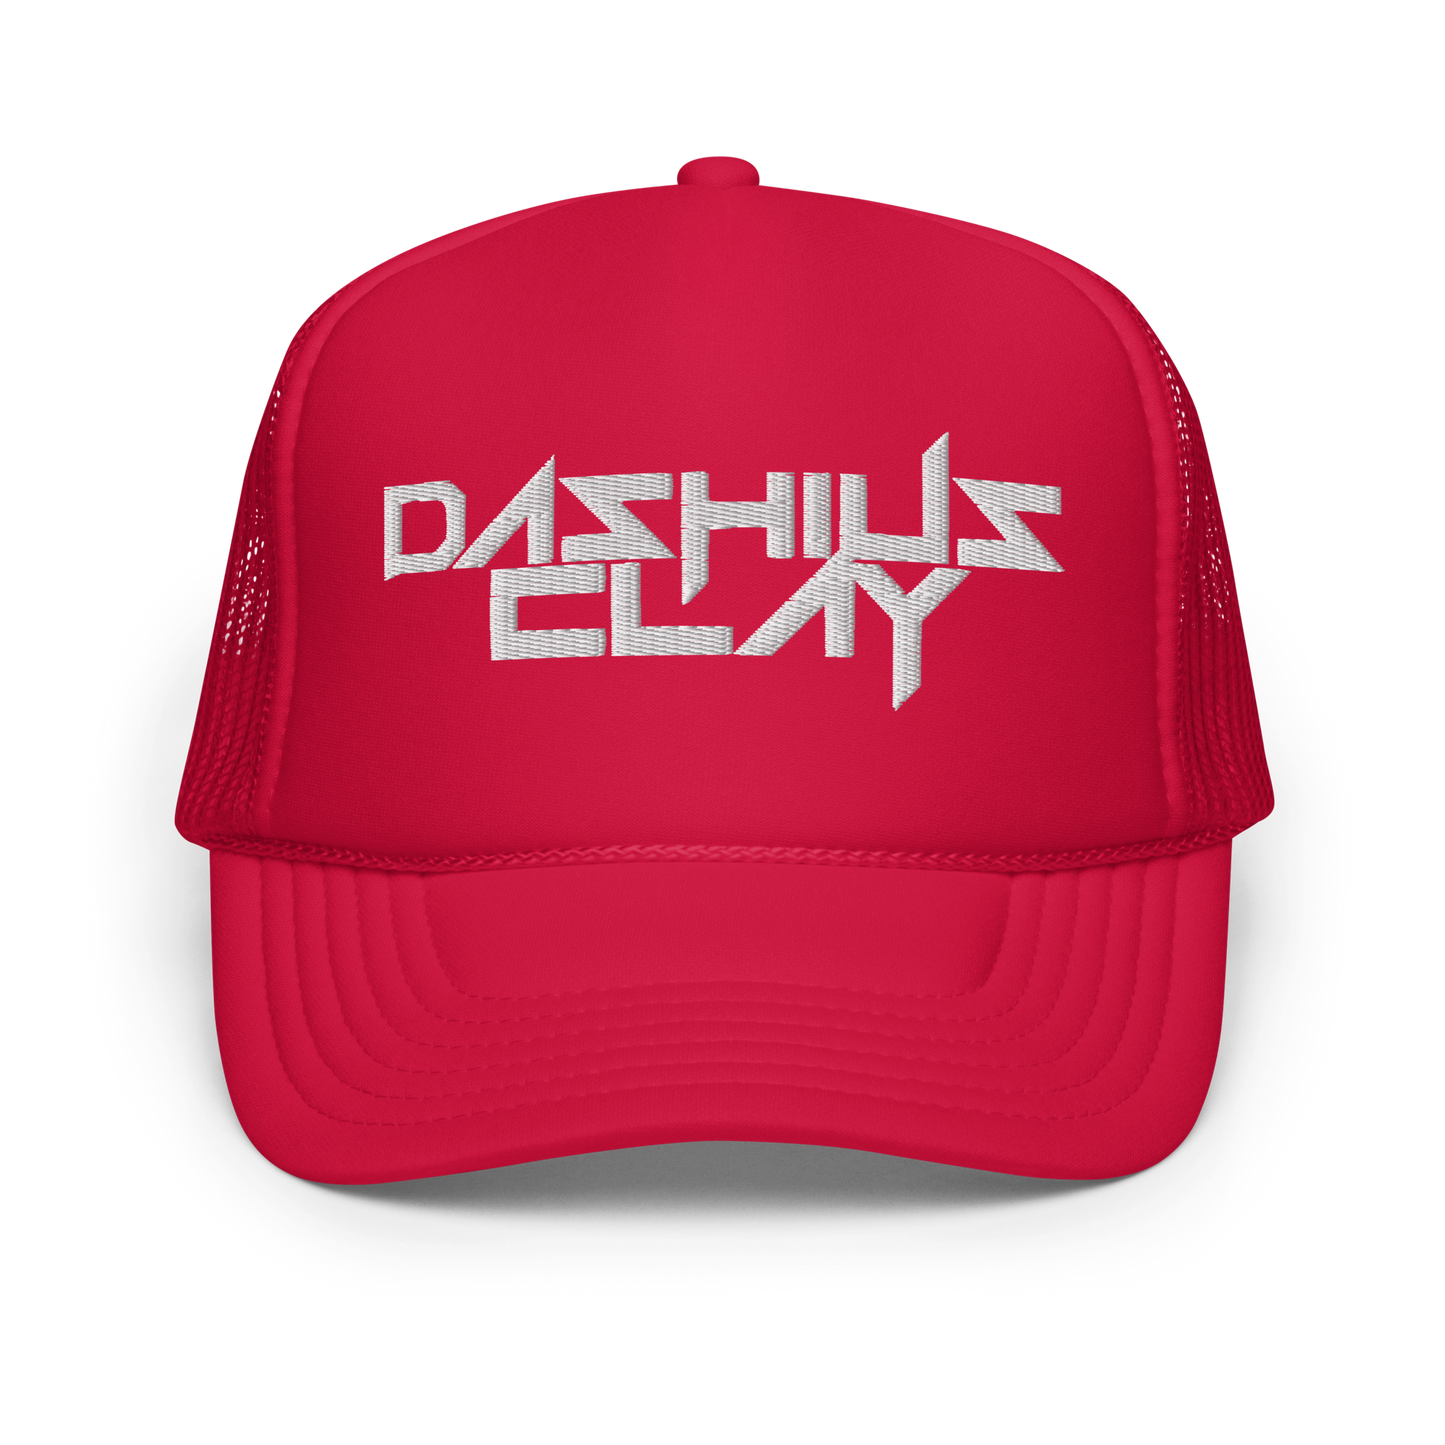 DASHIUS CLAY Trucker Hat